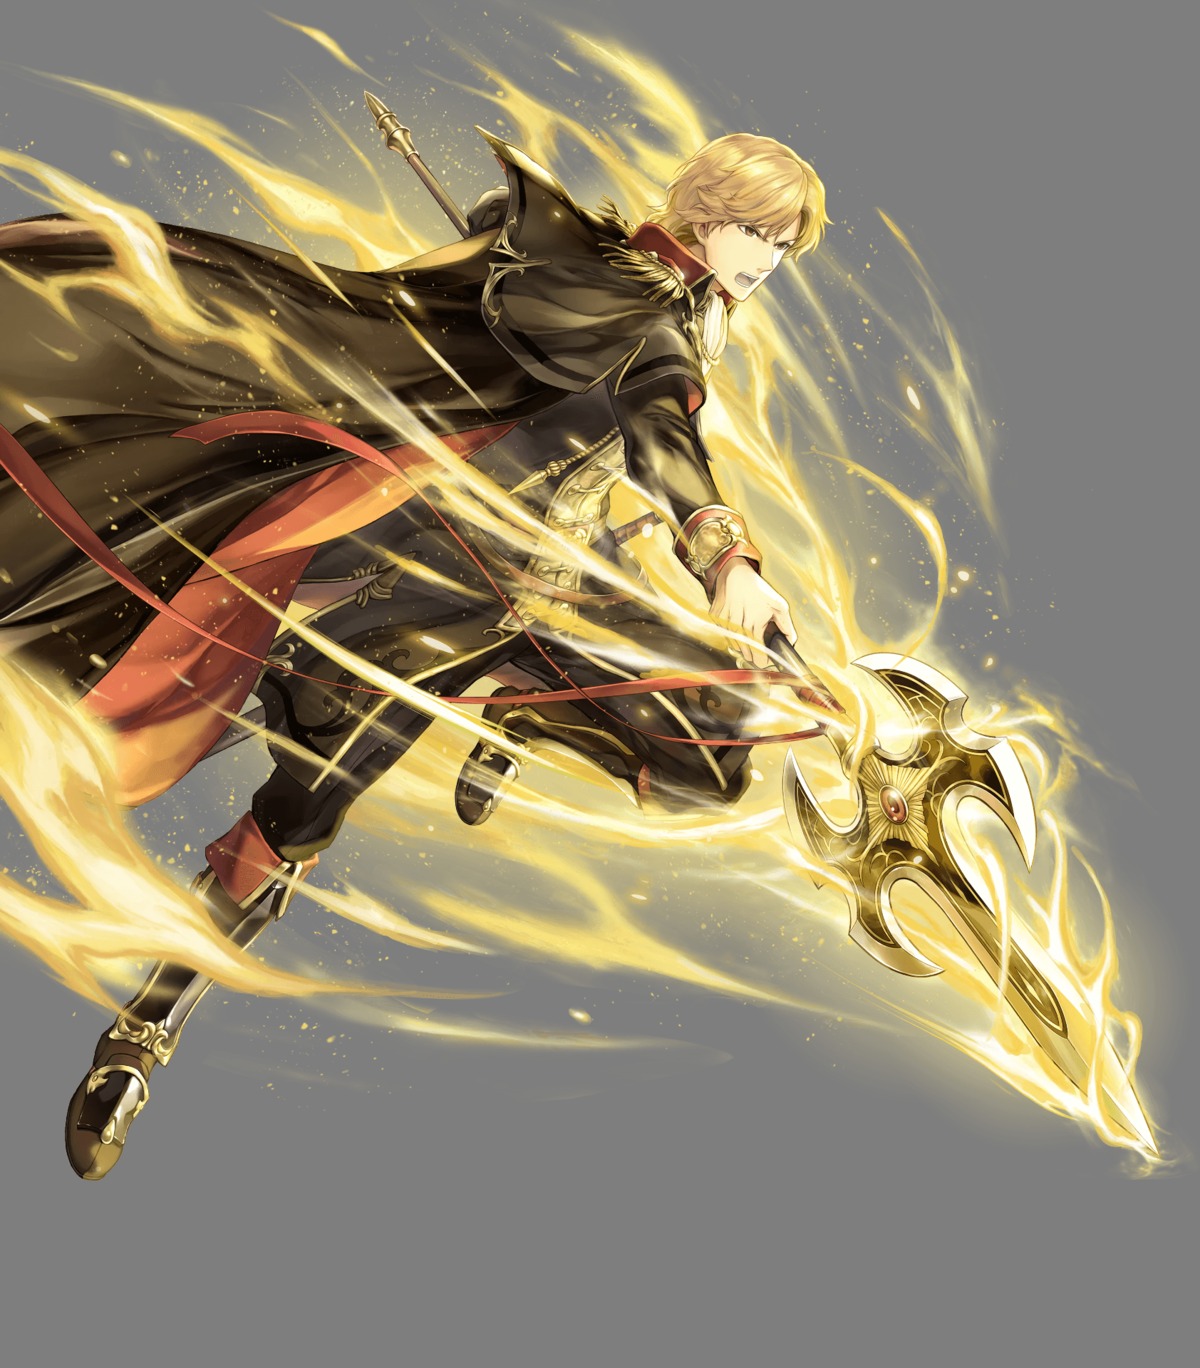 fire_emblem fire_emblem_echoes heels nintendo sword uniform weapon yamada_koutarou zeke_(fire_emblem)